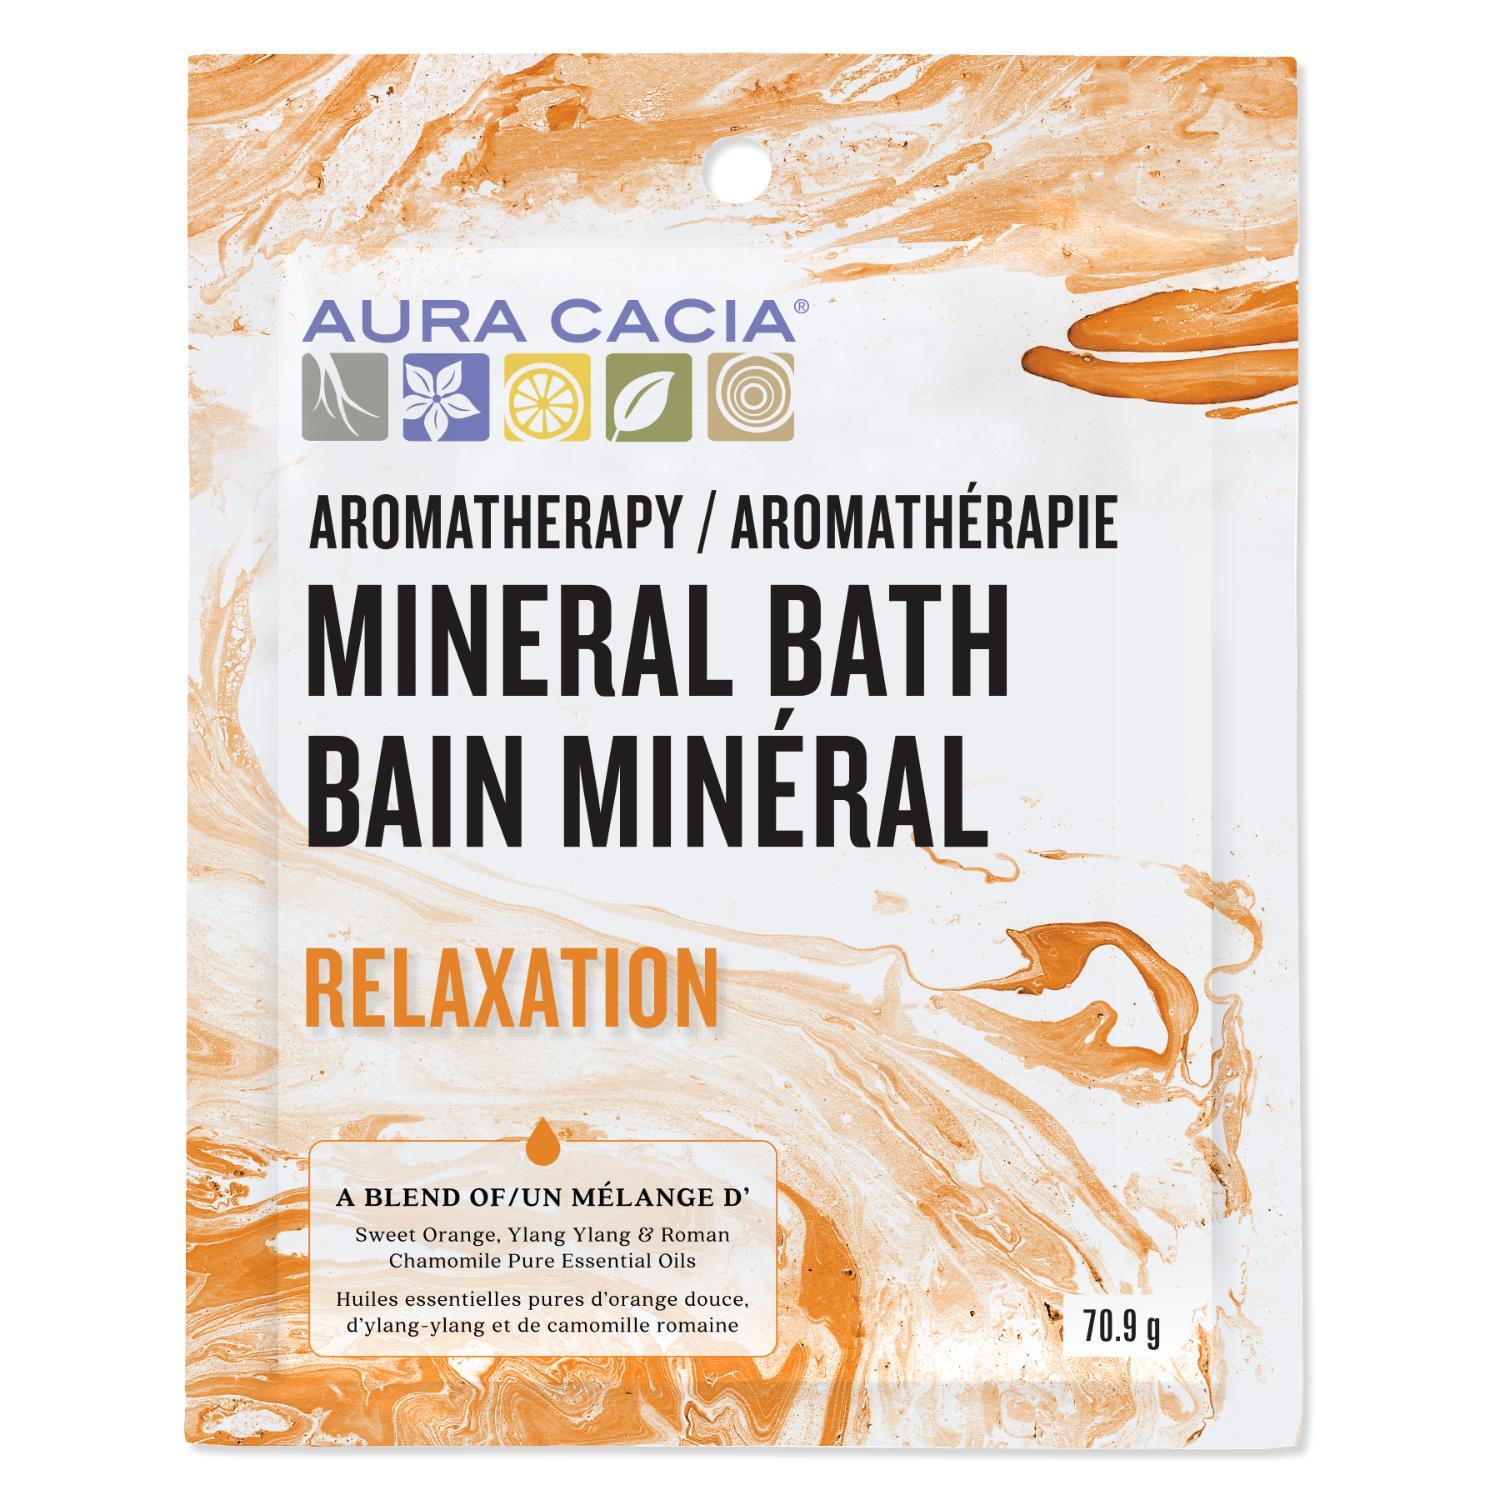 Aura Cacia Mineral Bath Relaxation 71g